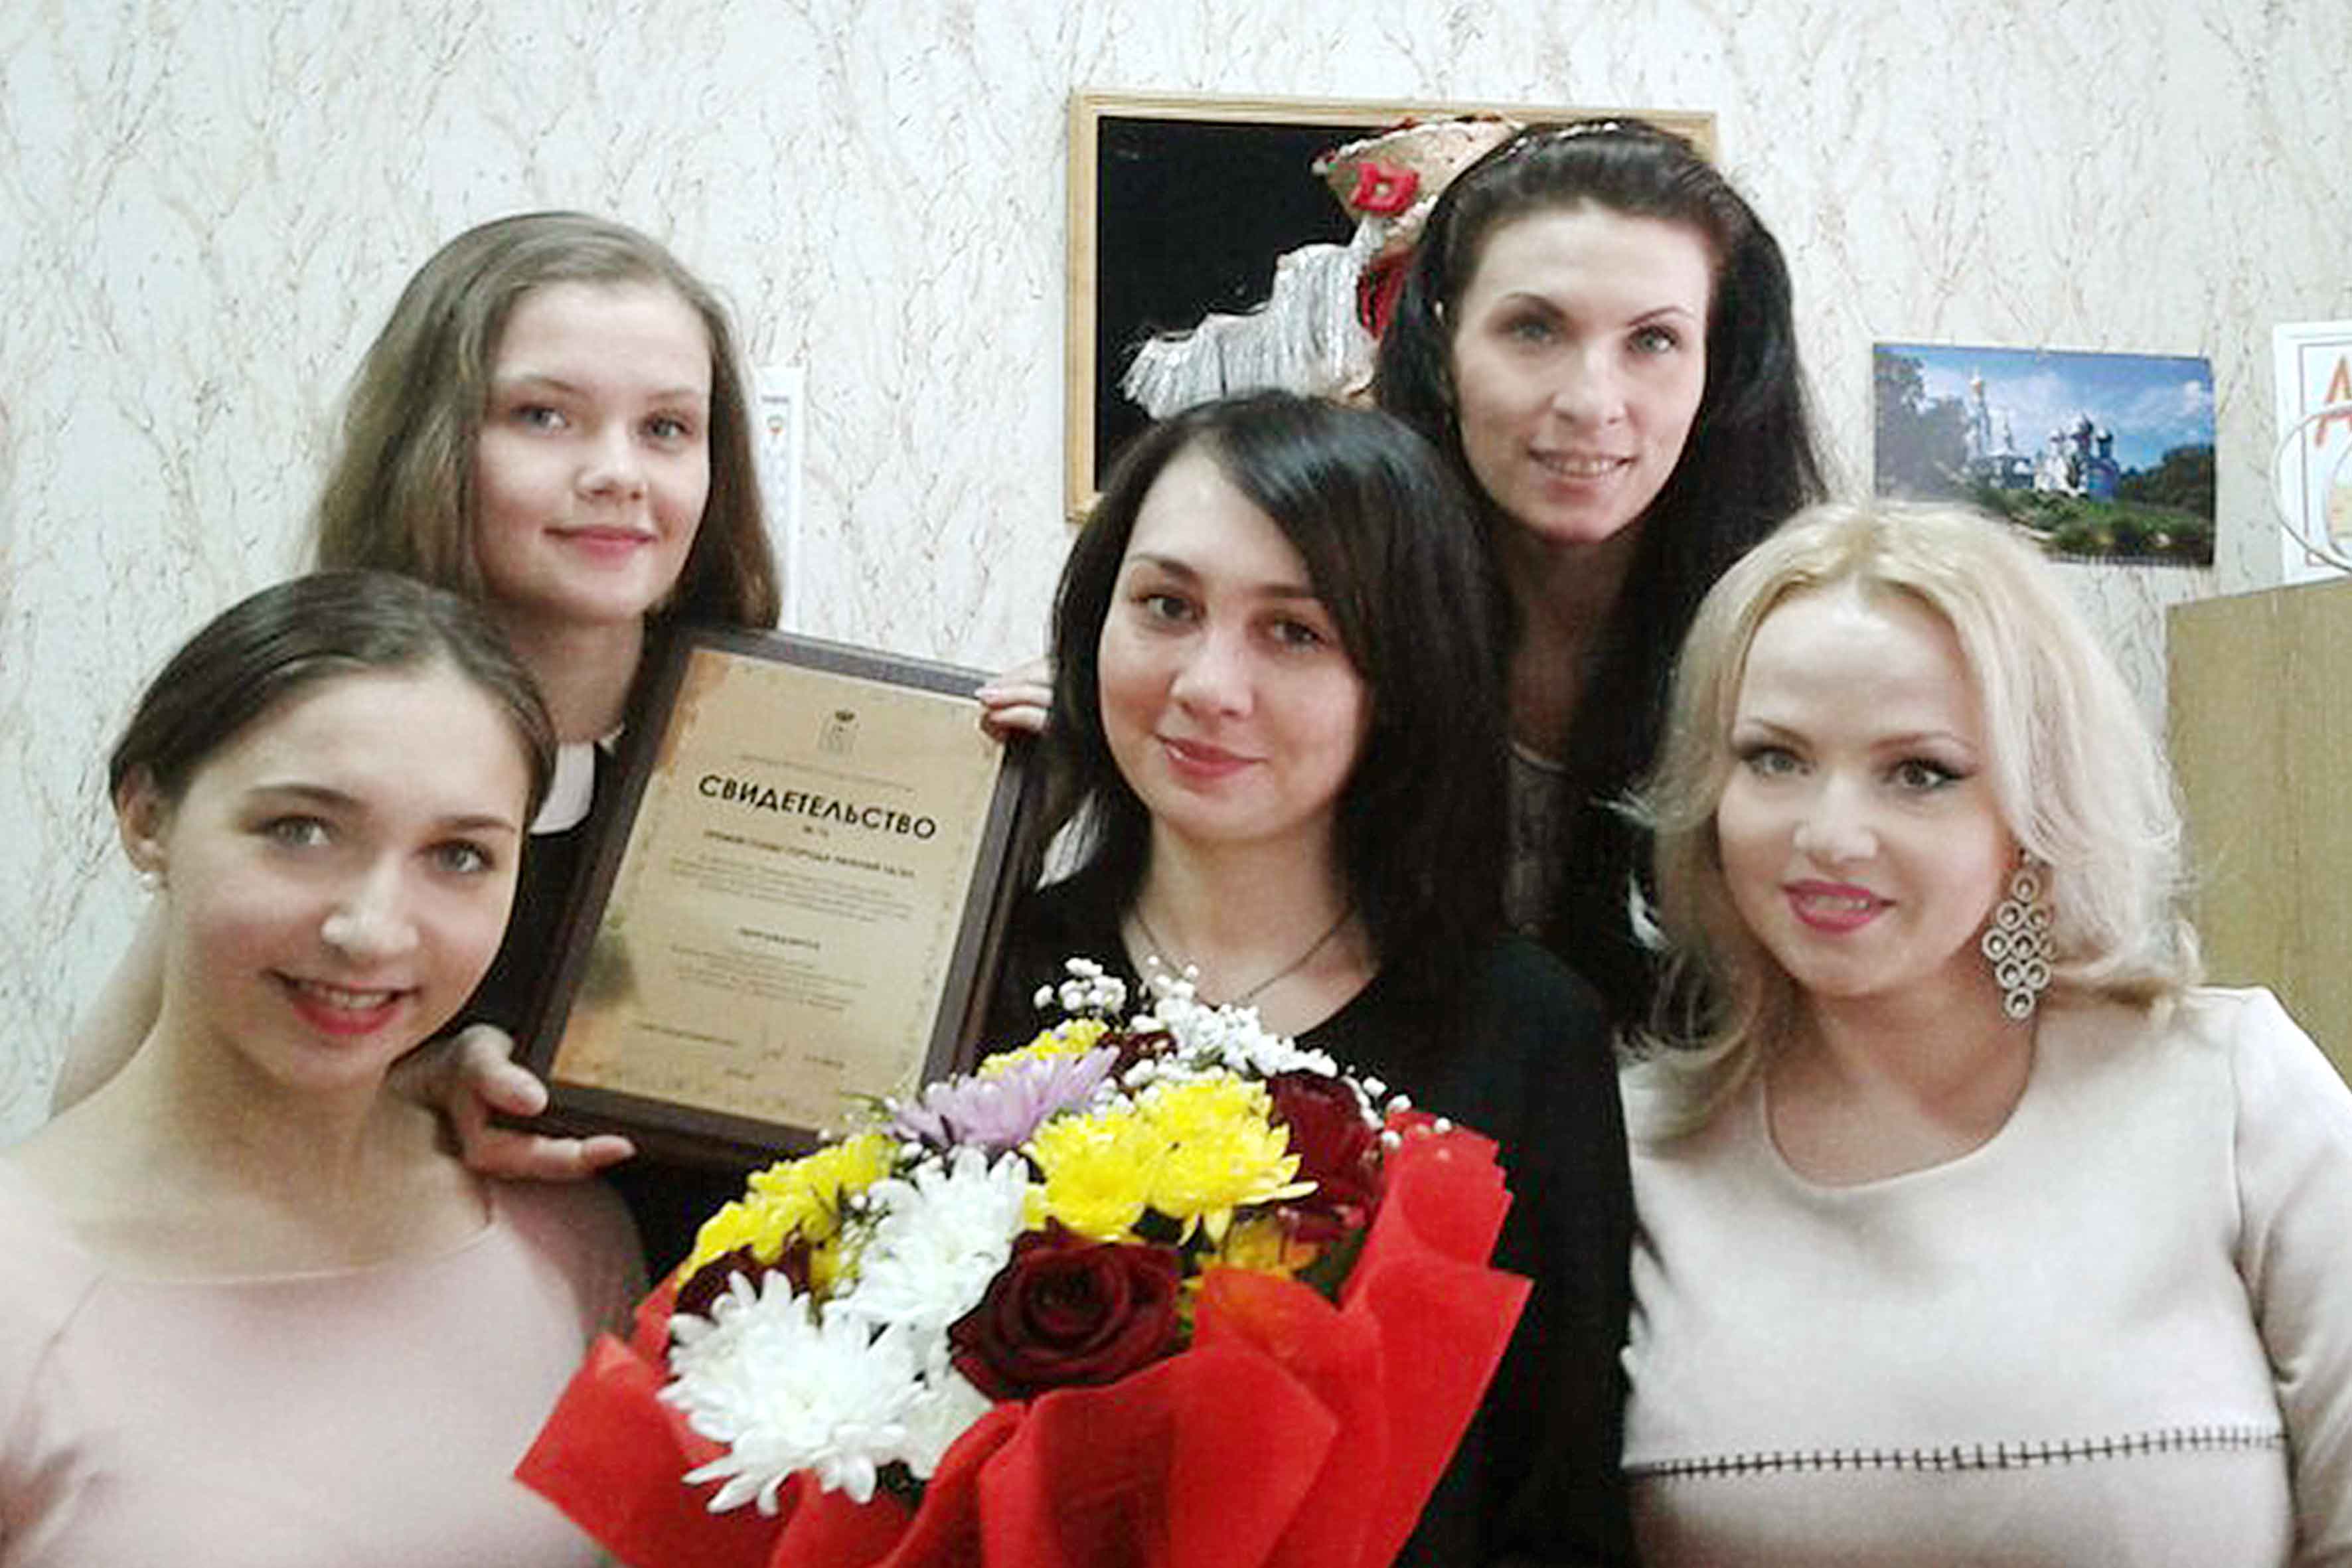 Спектакль Нижнетагильского театра кукол получил премию Главы города! 